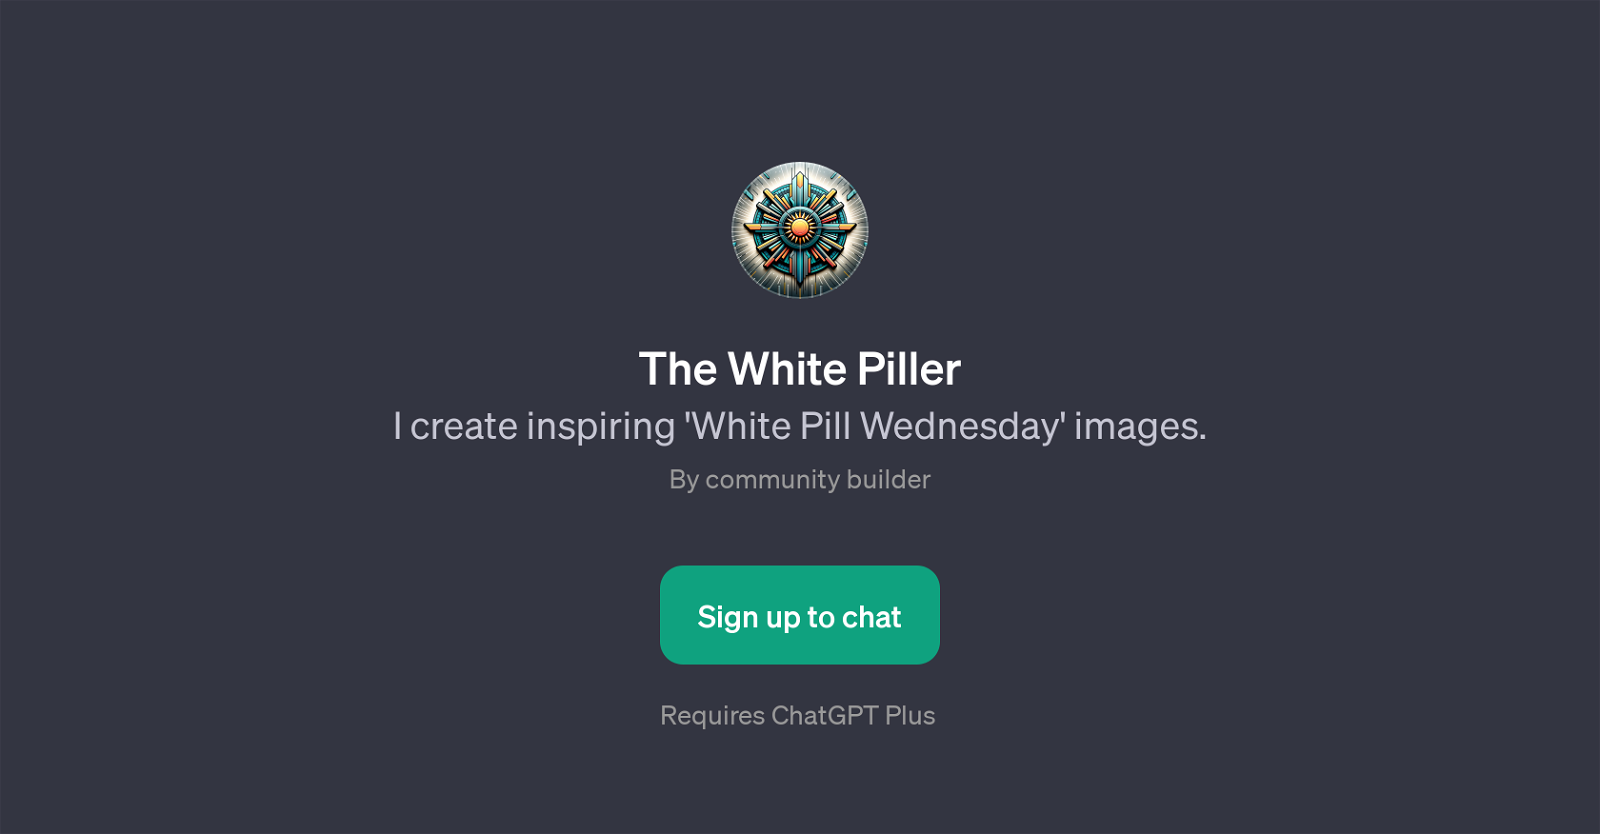 The White Piller website